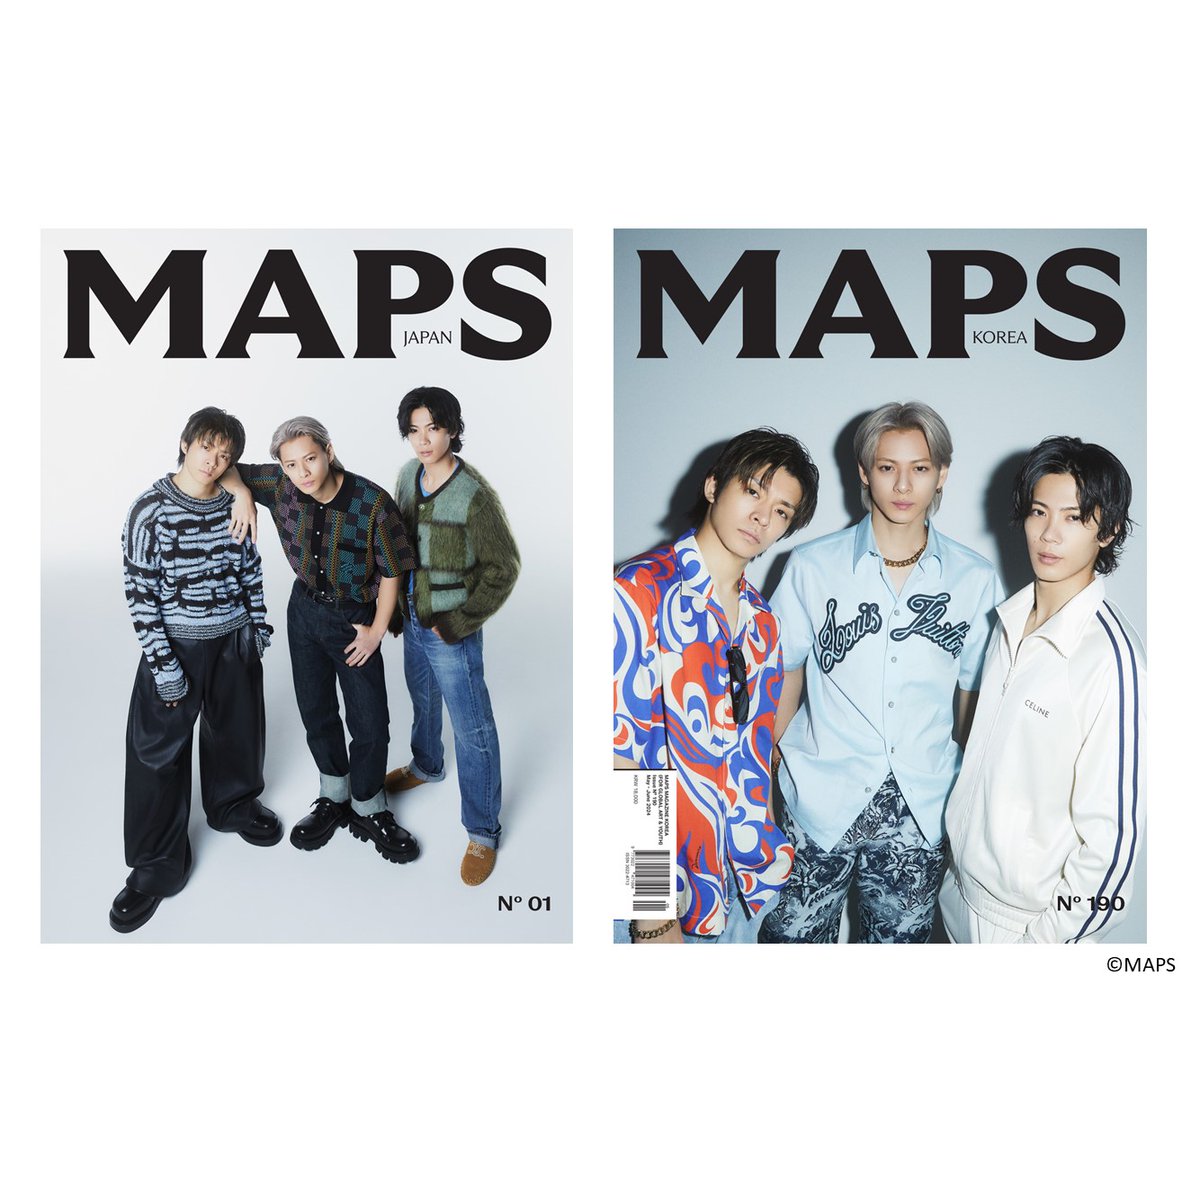 5/3(金・祝)発売の『MAPS JAPAN』当日販売分について、若干数の在庫がございますので、店頭での通常販売を行っております。(ご来店・お問合せのタイミングで完売している可能性もございますので予めご了承ください。) #MAPSJAPAN #Number_i #六本松蔦屋書店